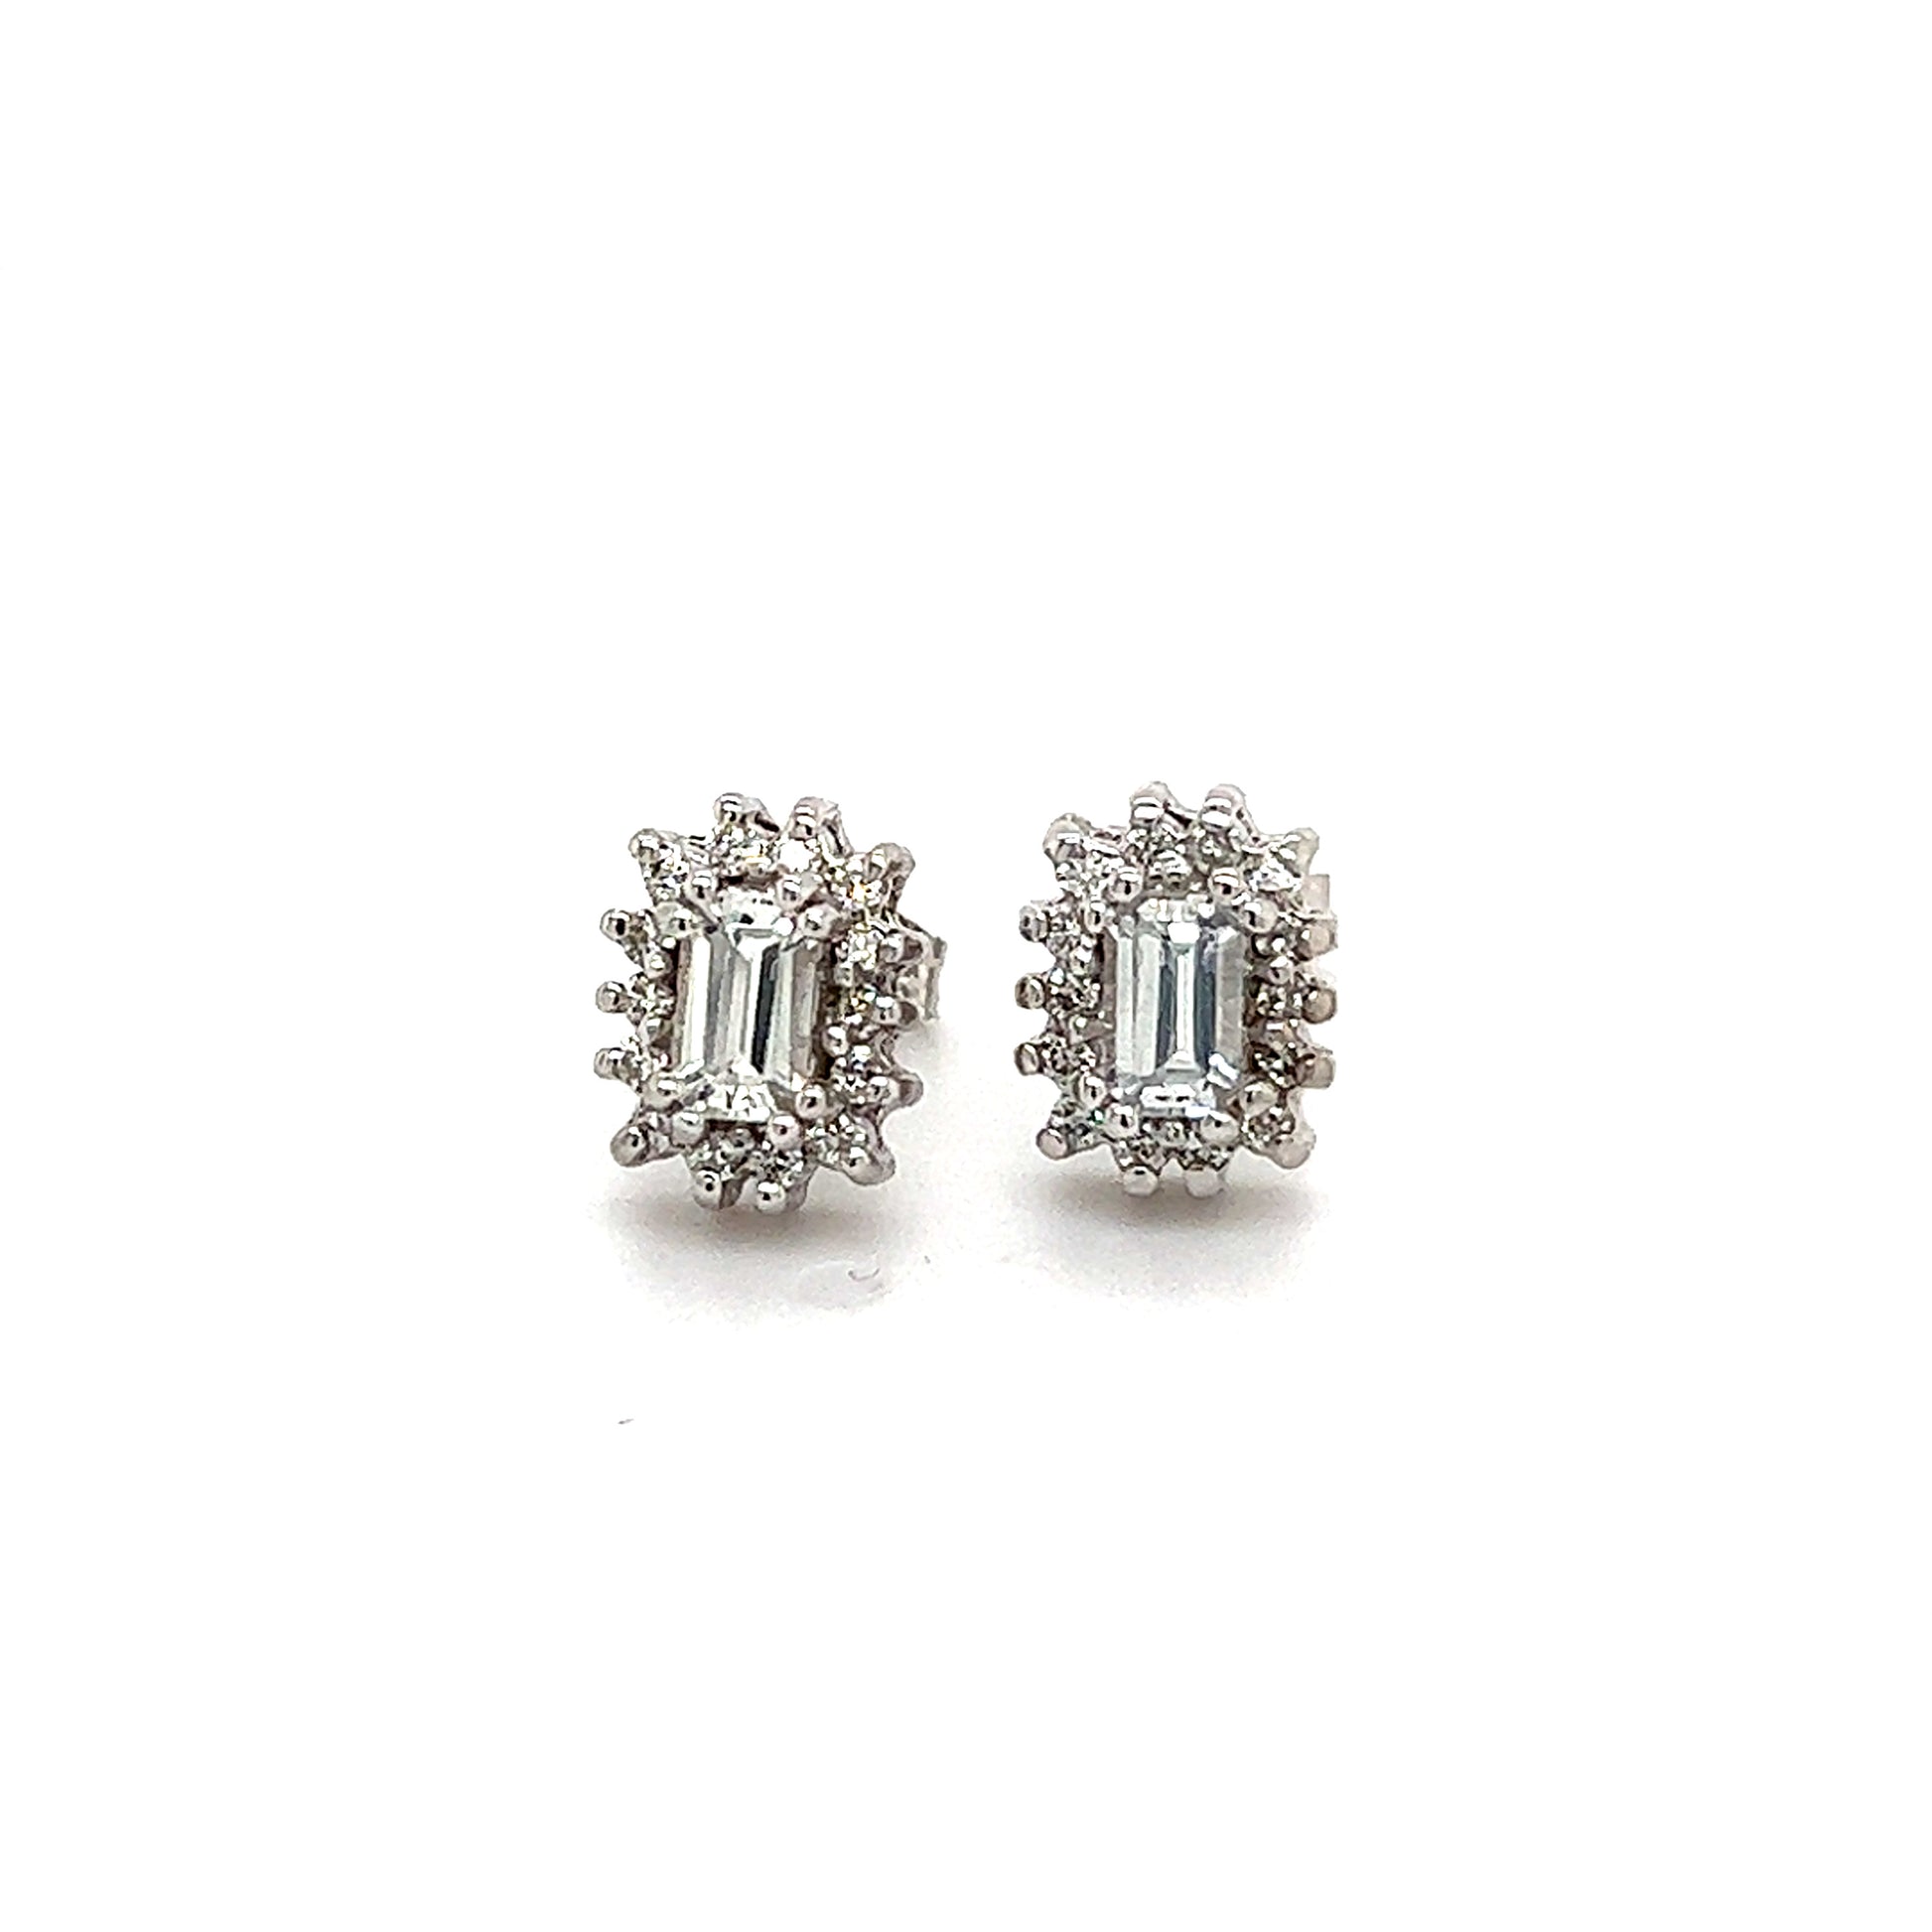 Natural Sapphire Diamond Stud Earrings 14k W Gold 0.94 TCW Certified $2950 121267 - Certified Fine Jewelry